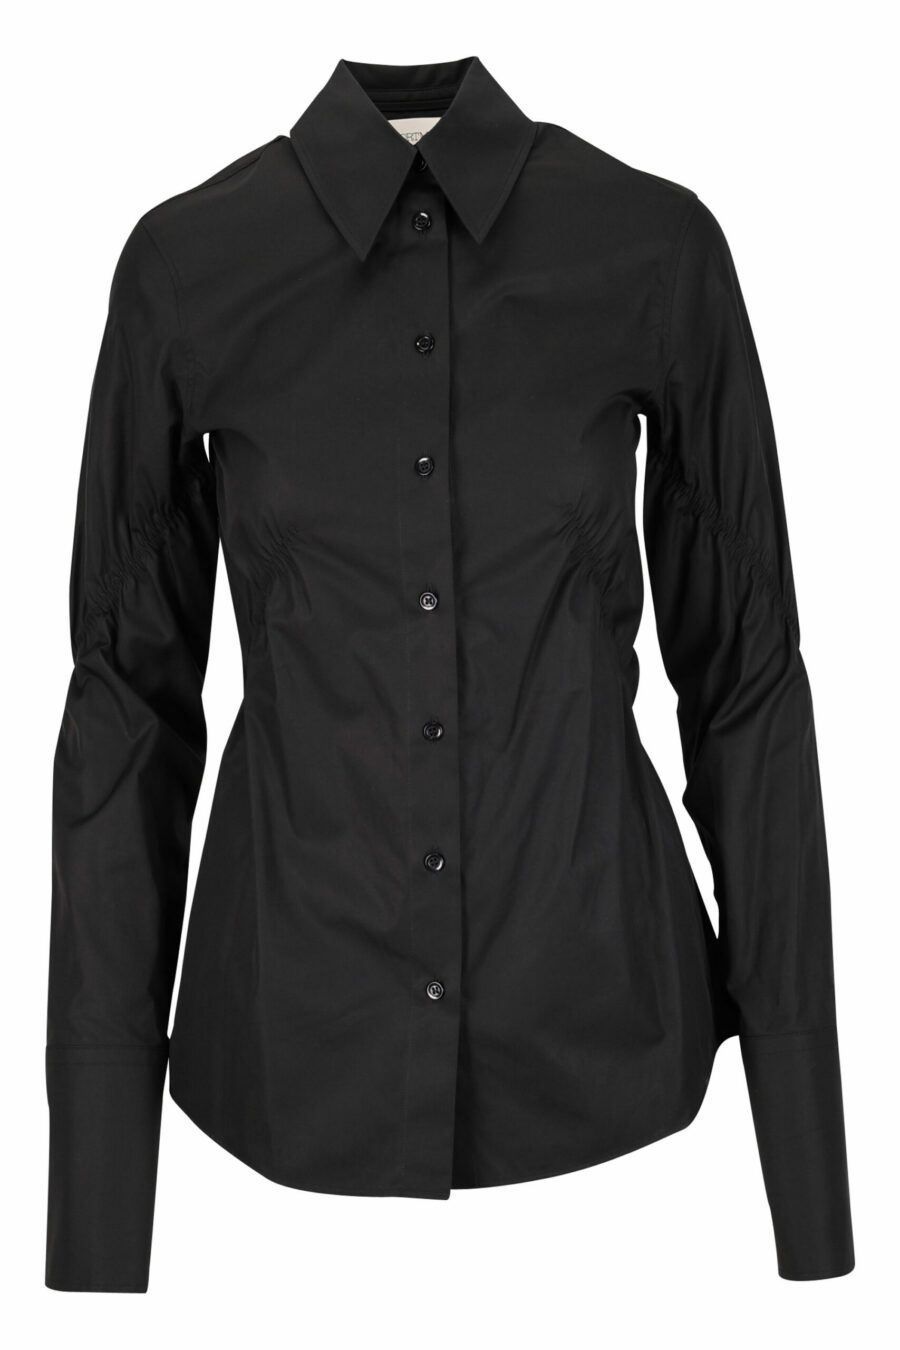 Camisa negra de algodón - 21110241060032 scaled